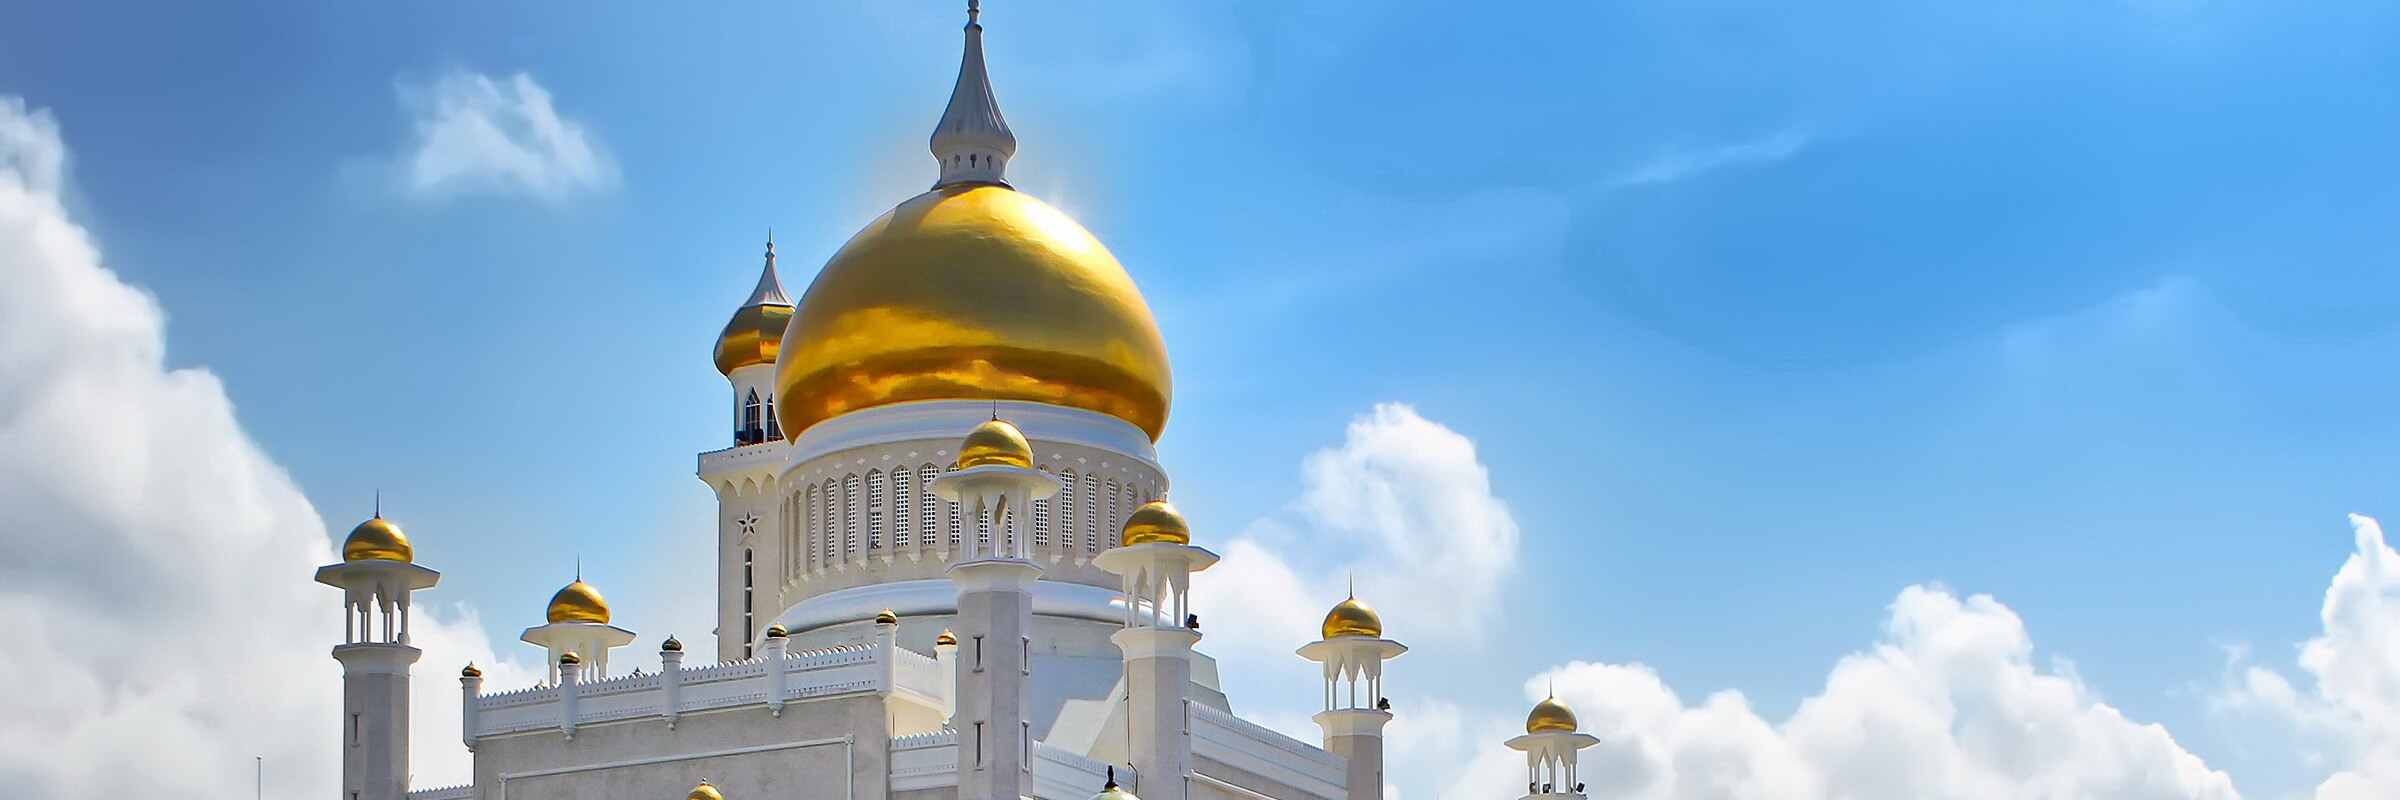 Die königliche Moschee Sultan Omar Ali Saifuddin in Bandar Seri Begawan gilt als Wahrzeichen der Stadt und des ganzen Landes.